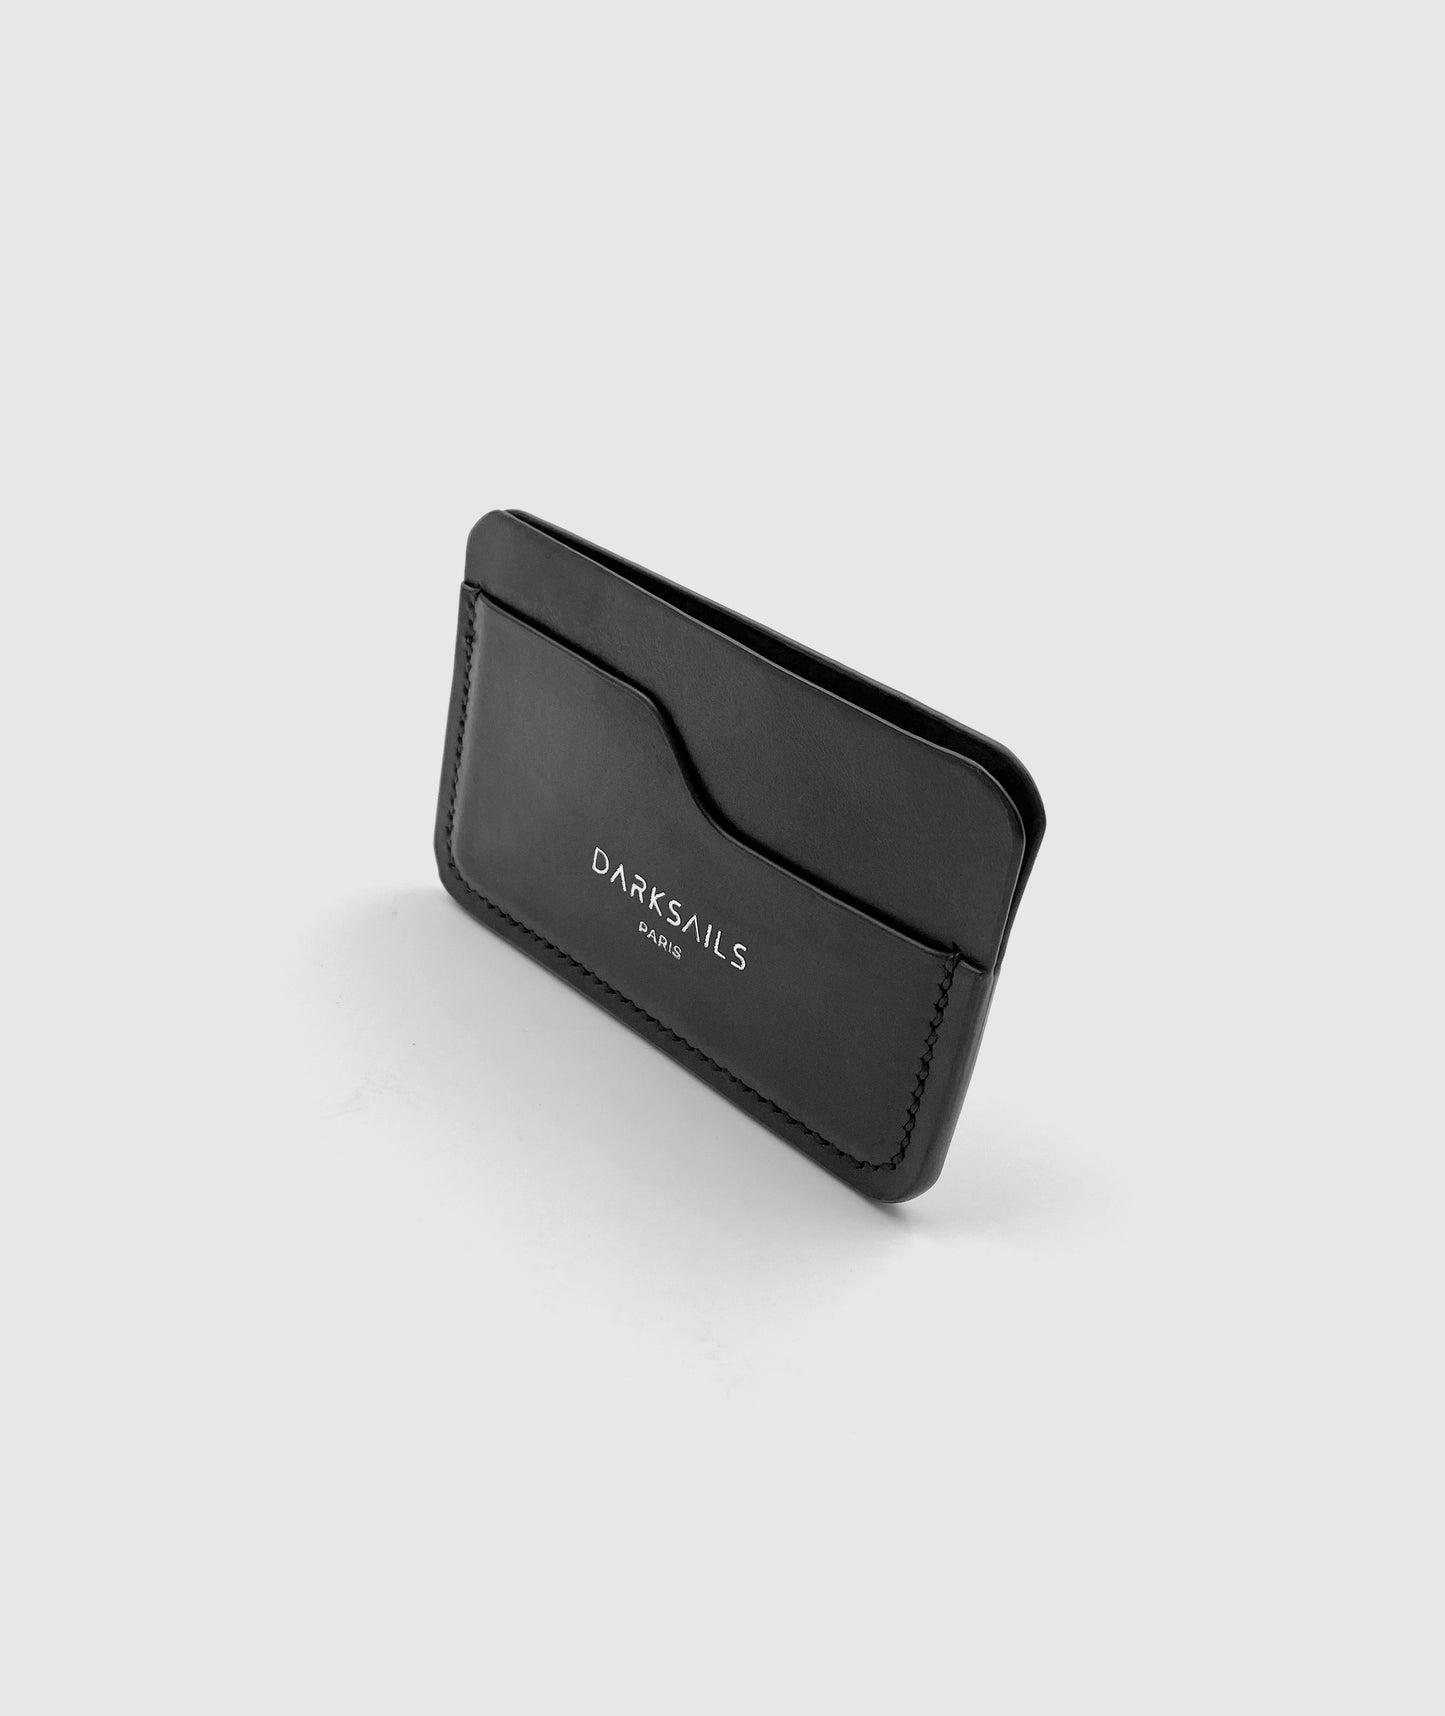 Slim black leather card holder